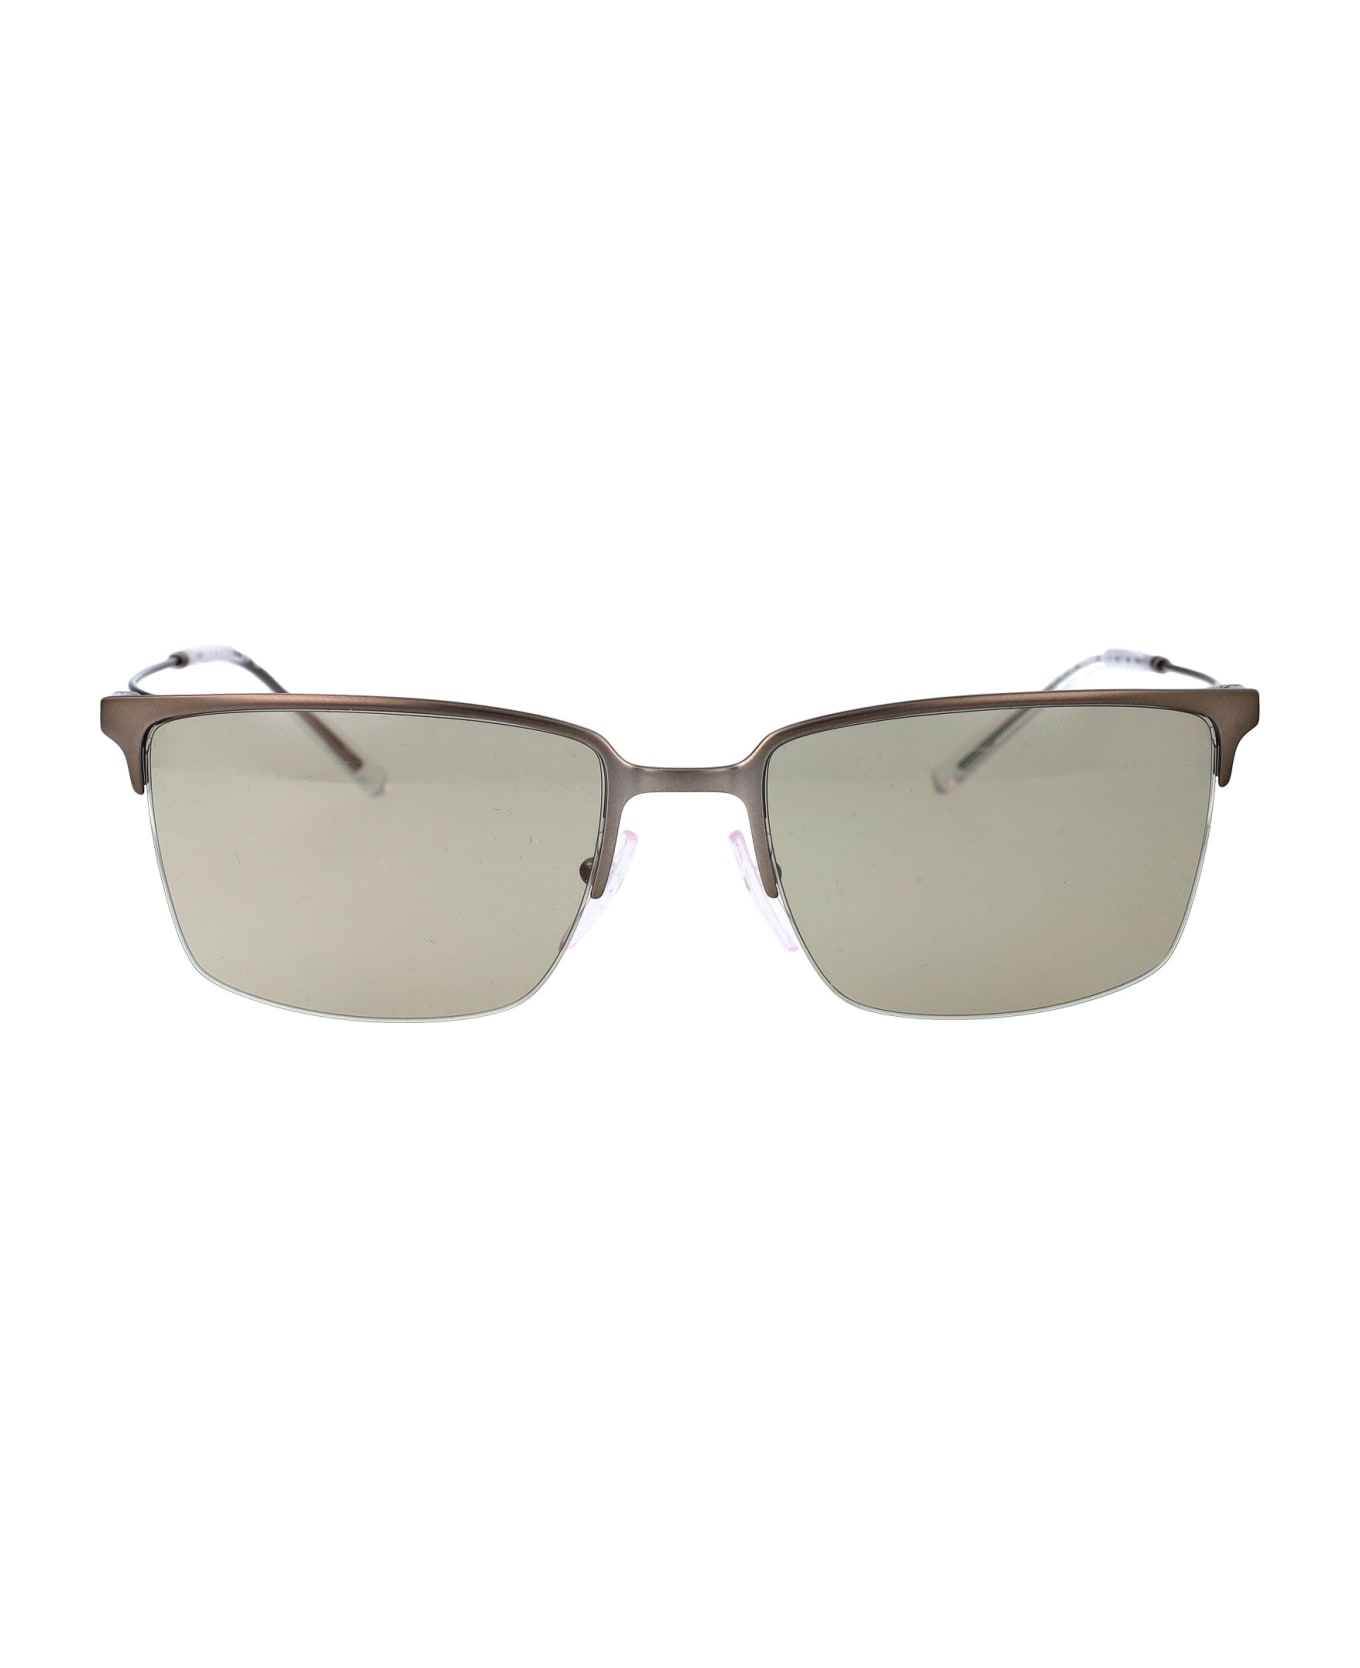 Emporio Armani 0ea2155 Sunglasses - 3003/3 Matte Gunmetal